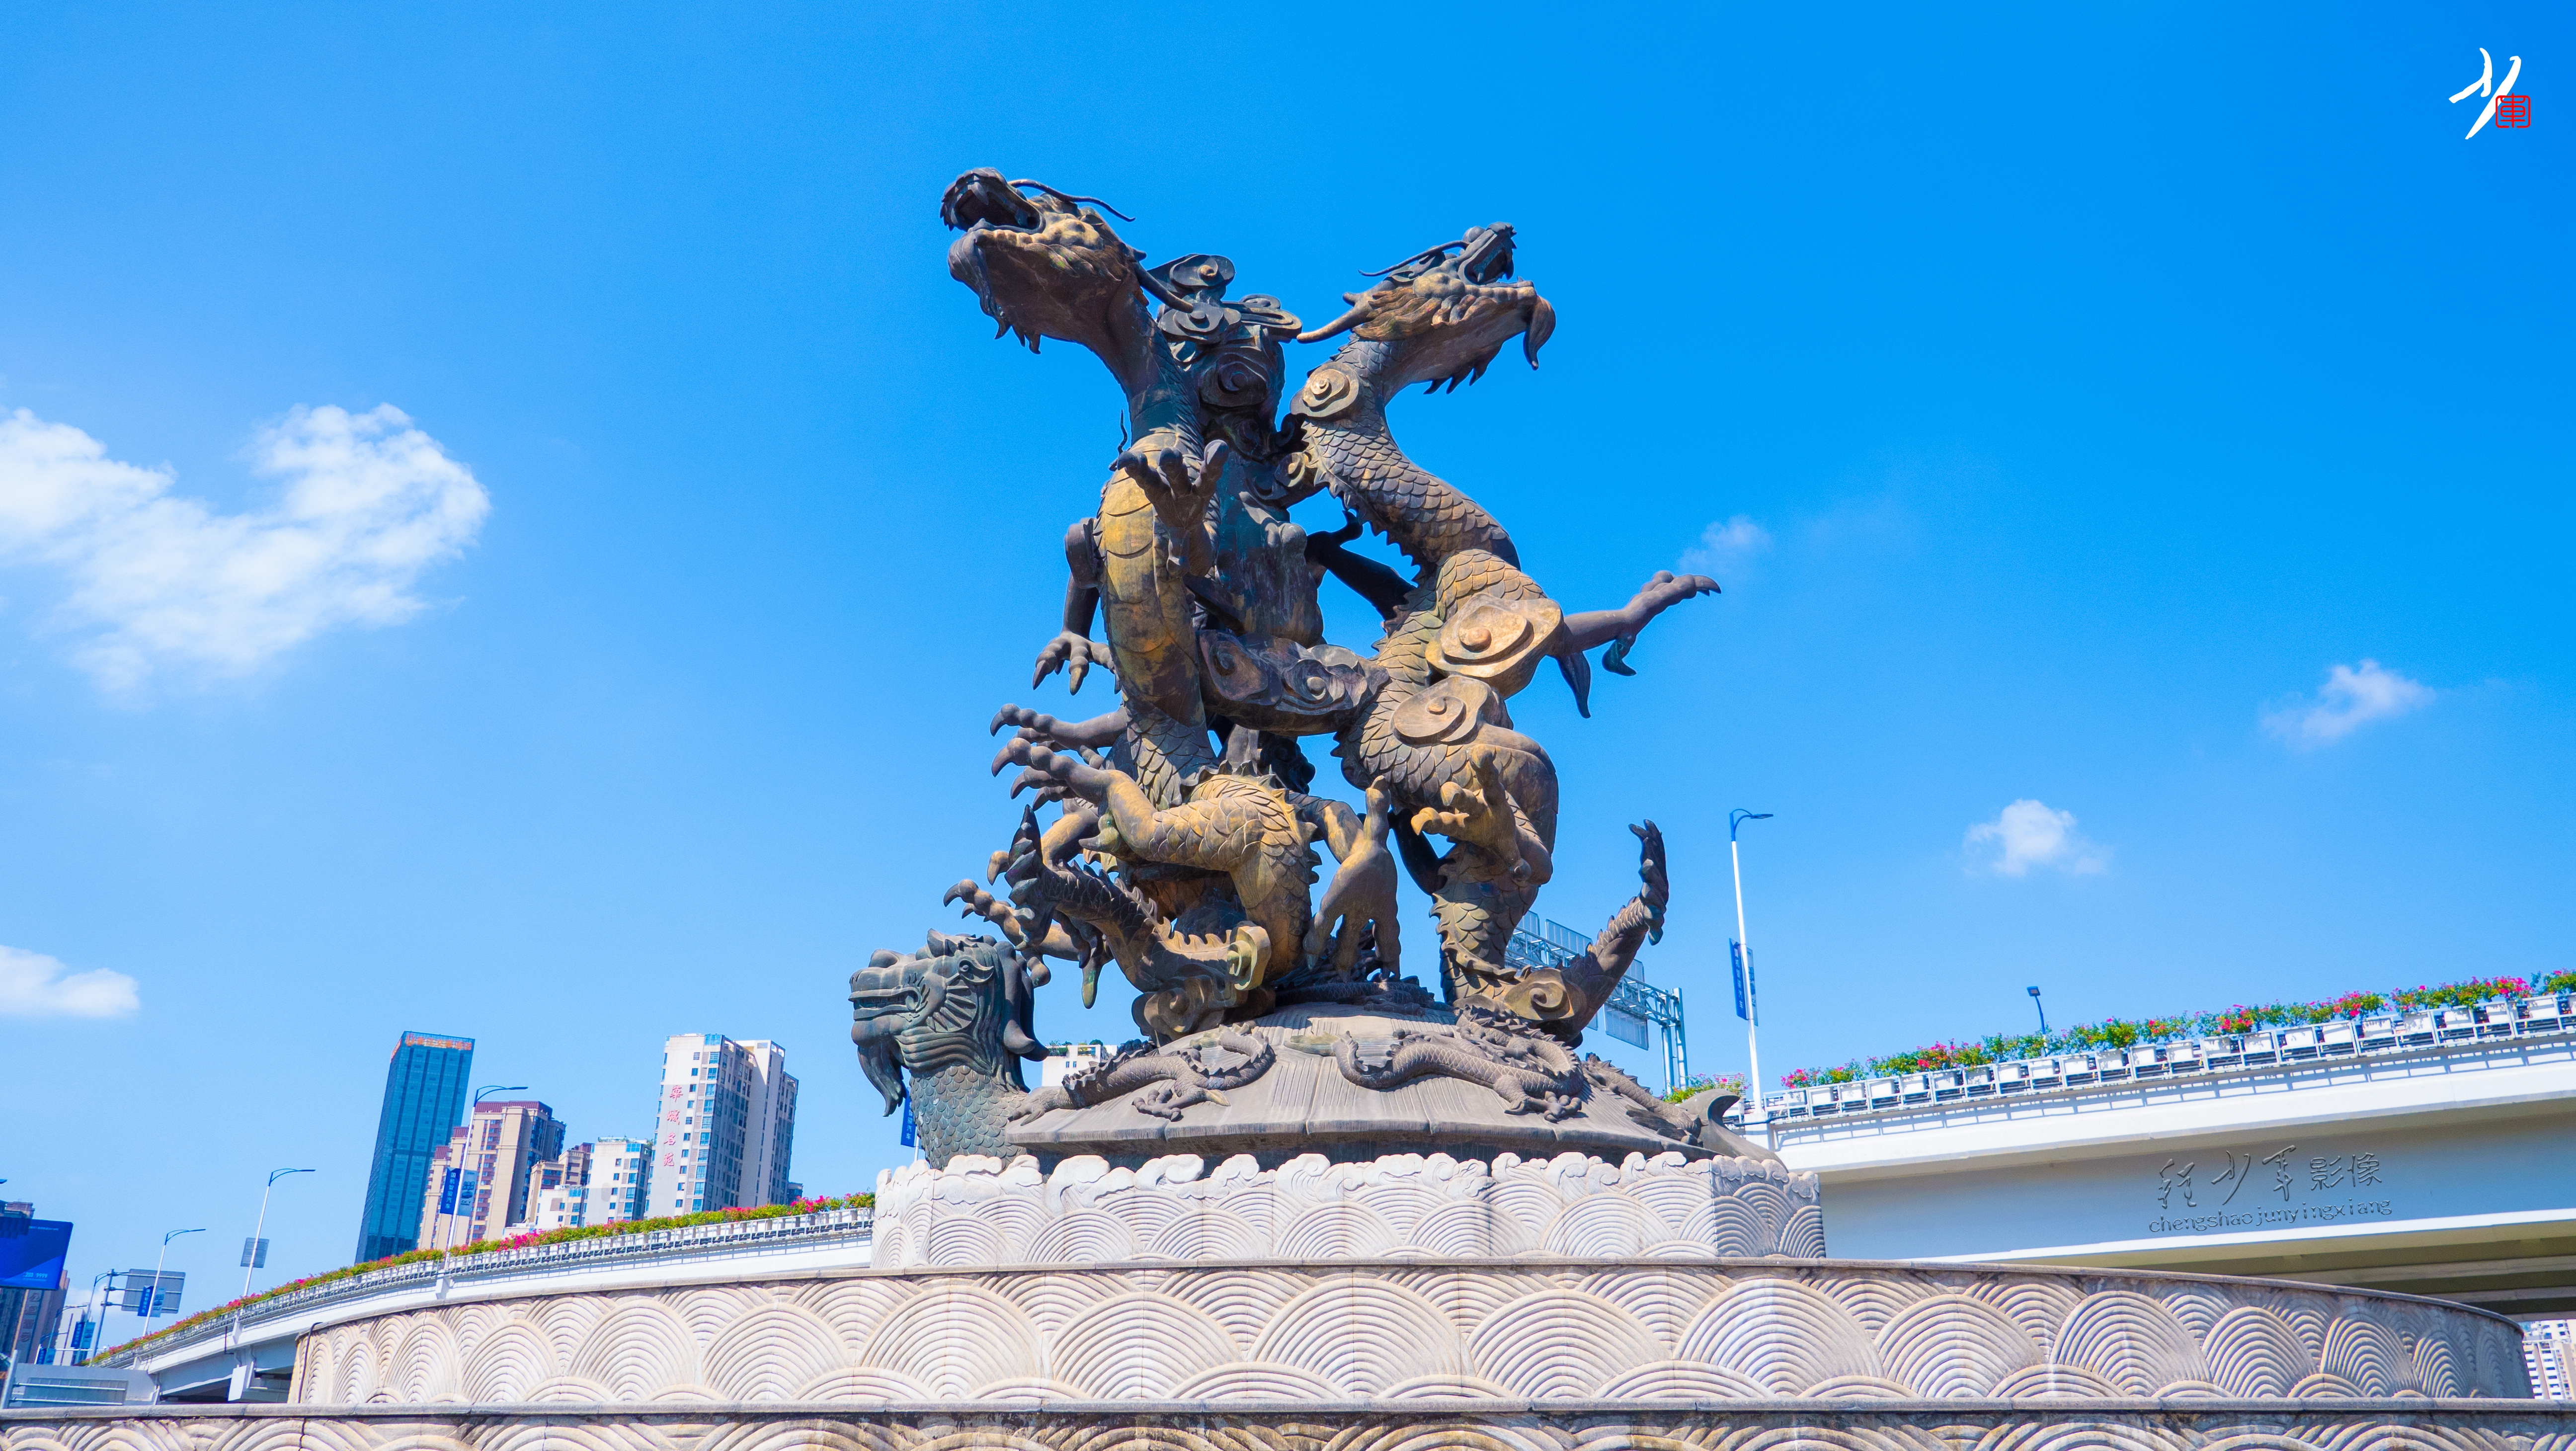 十龙聚龟,赣州标志性城市雕塑之一,曾被评选为全国十大丑陋雕塑